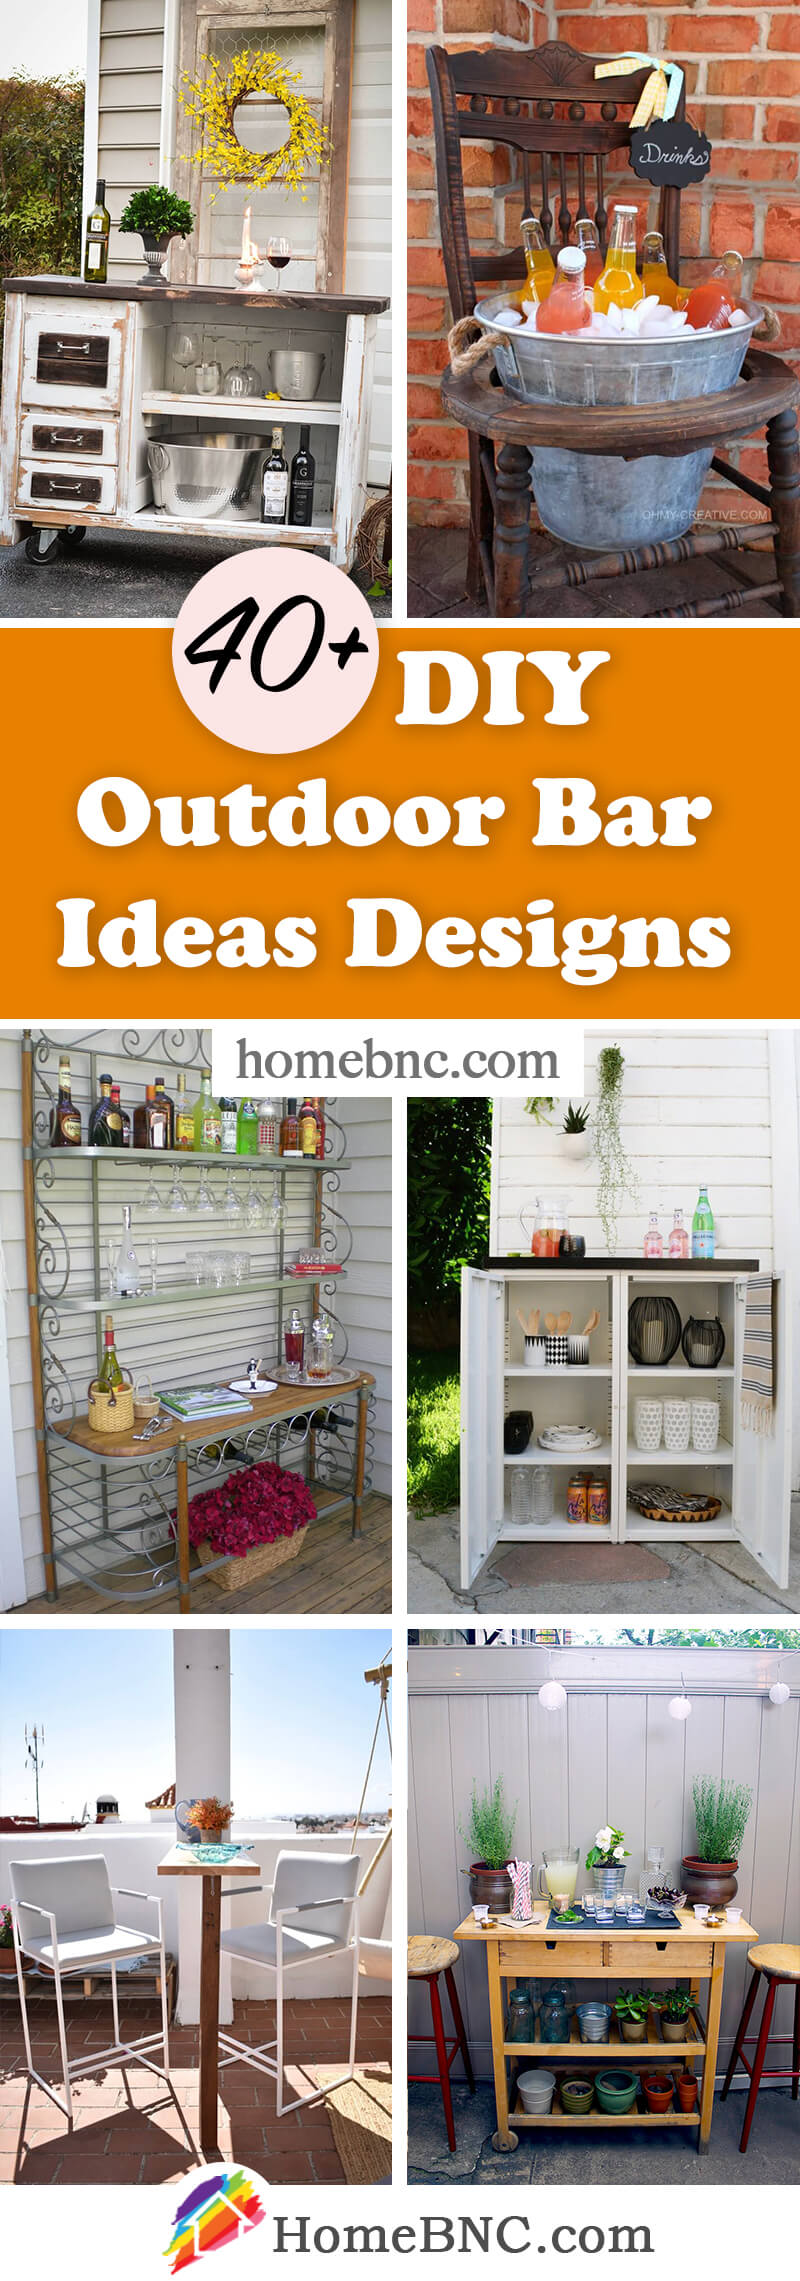 DIY Outdoor Bar Designs